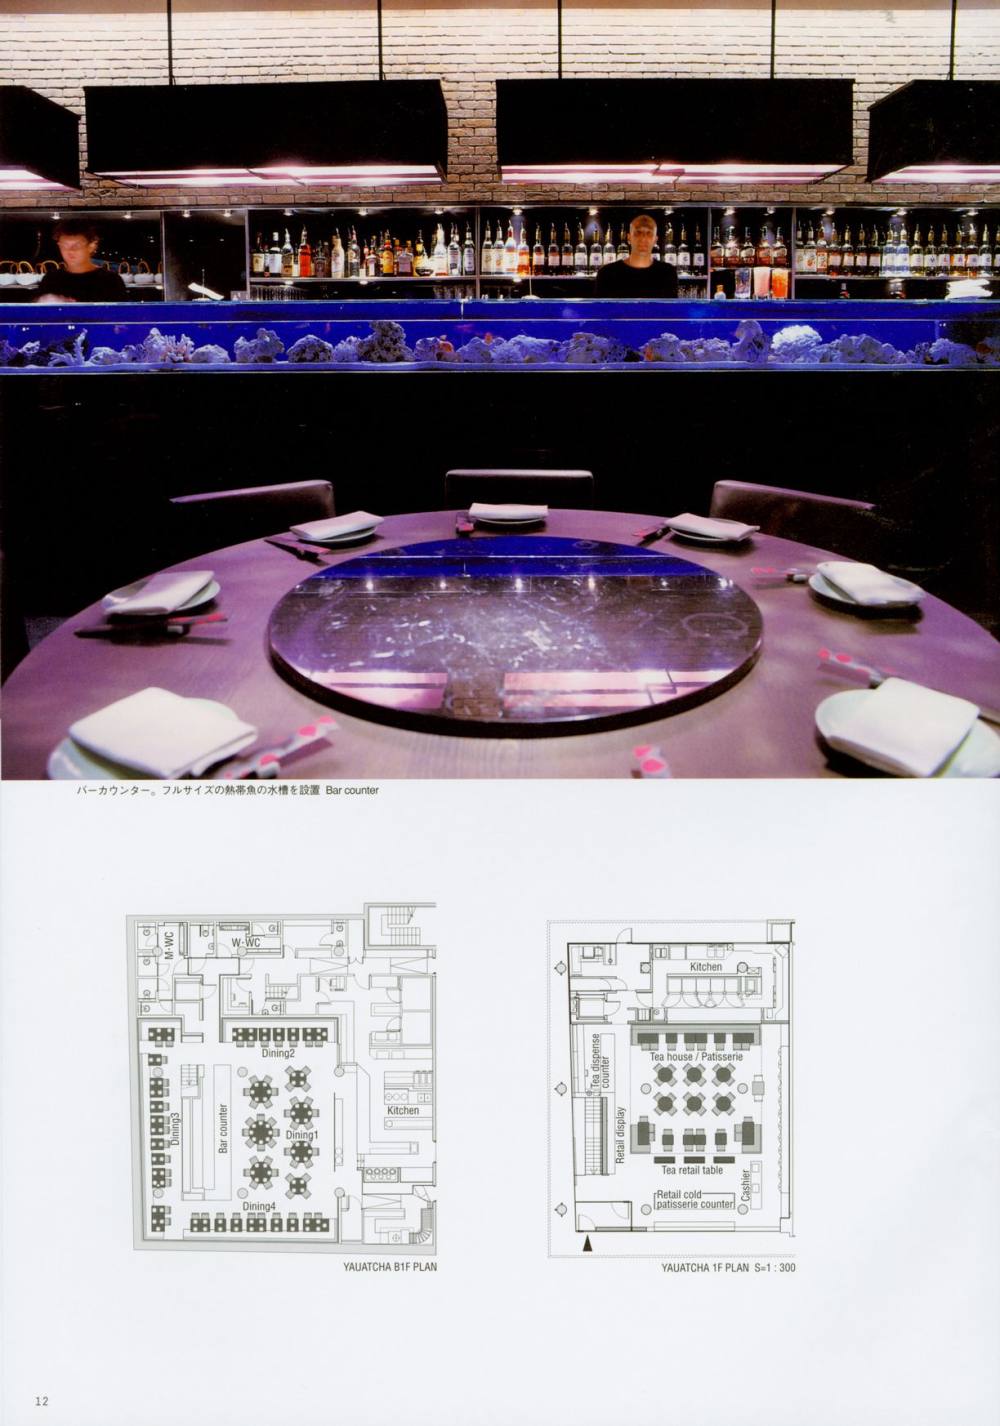 世界餐厅与酒吧设计精选3_012.jpg